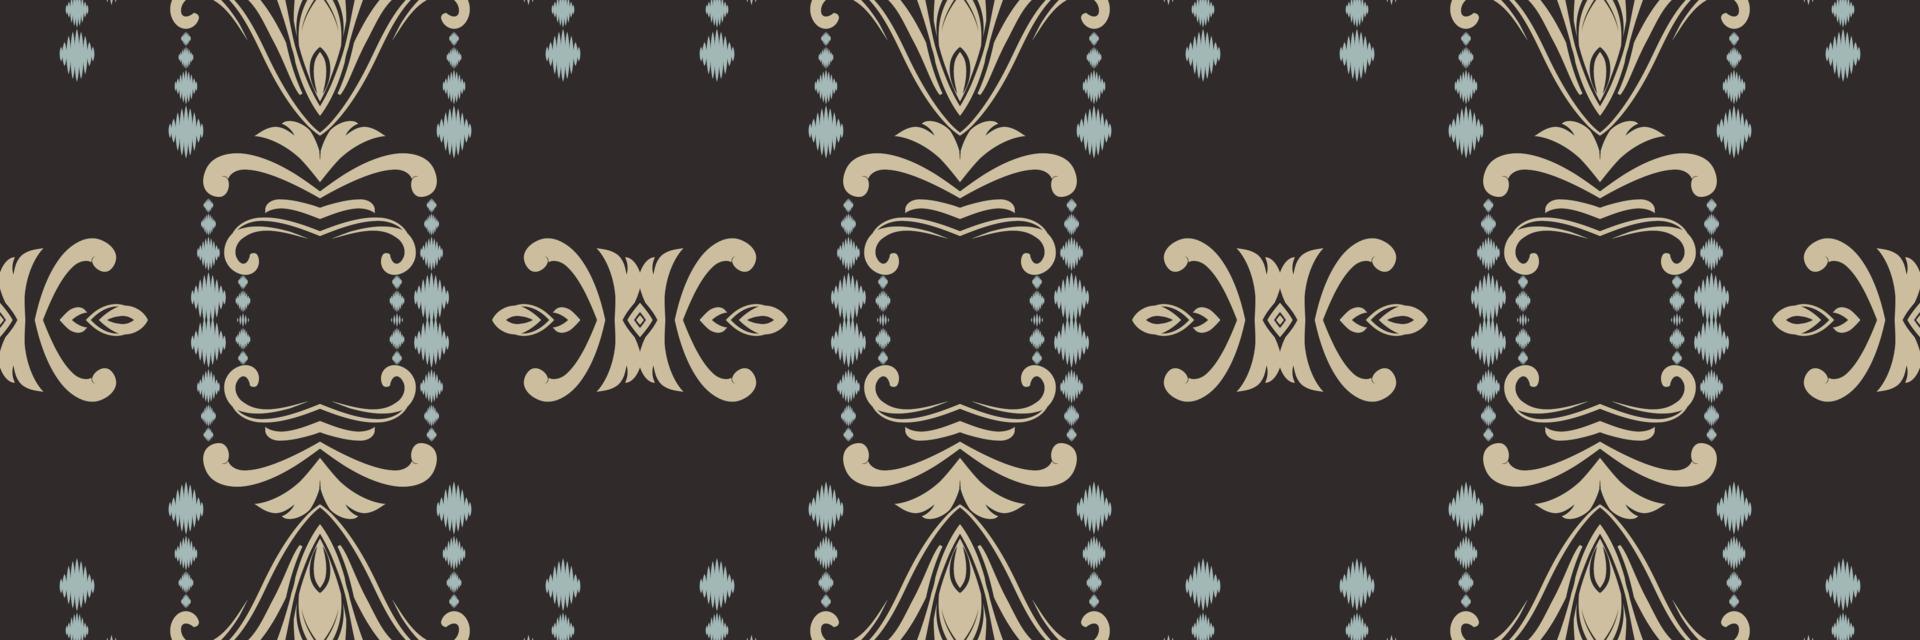 motivo ikat diseños batik textil patrones sin fisuras diseño vectorial digital para imprimir saree kurti borde de tela símbolos de pincel muestras diseñador vector